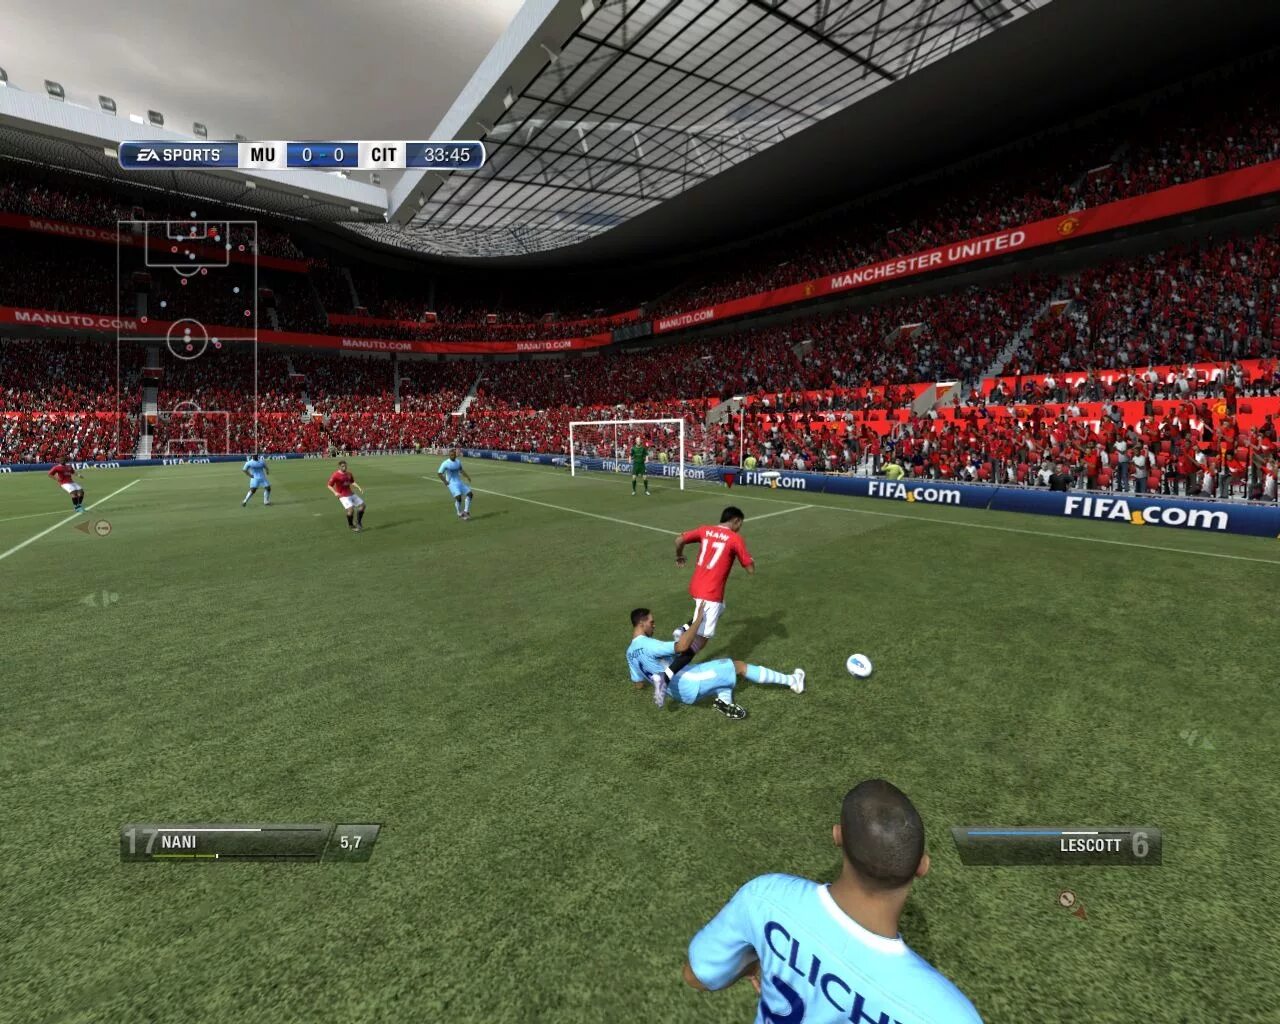 Fifa edition. FIFA 12 PC. FIFA 09 (PC). FIFA 13 (2012) PC. FIFA 12 Березуцкий.